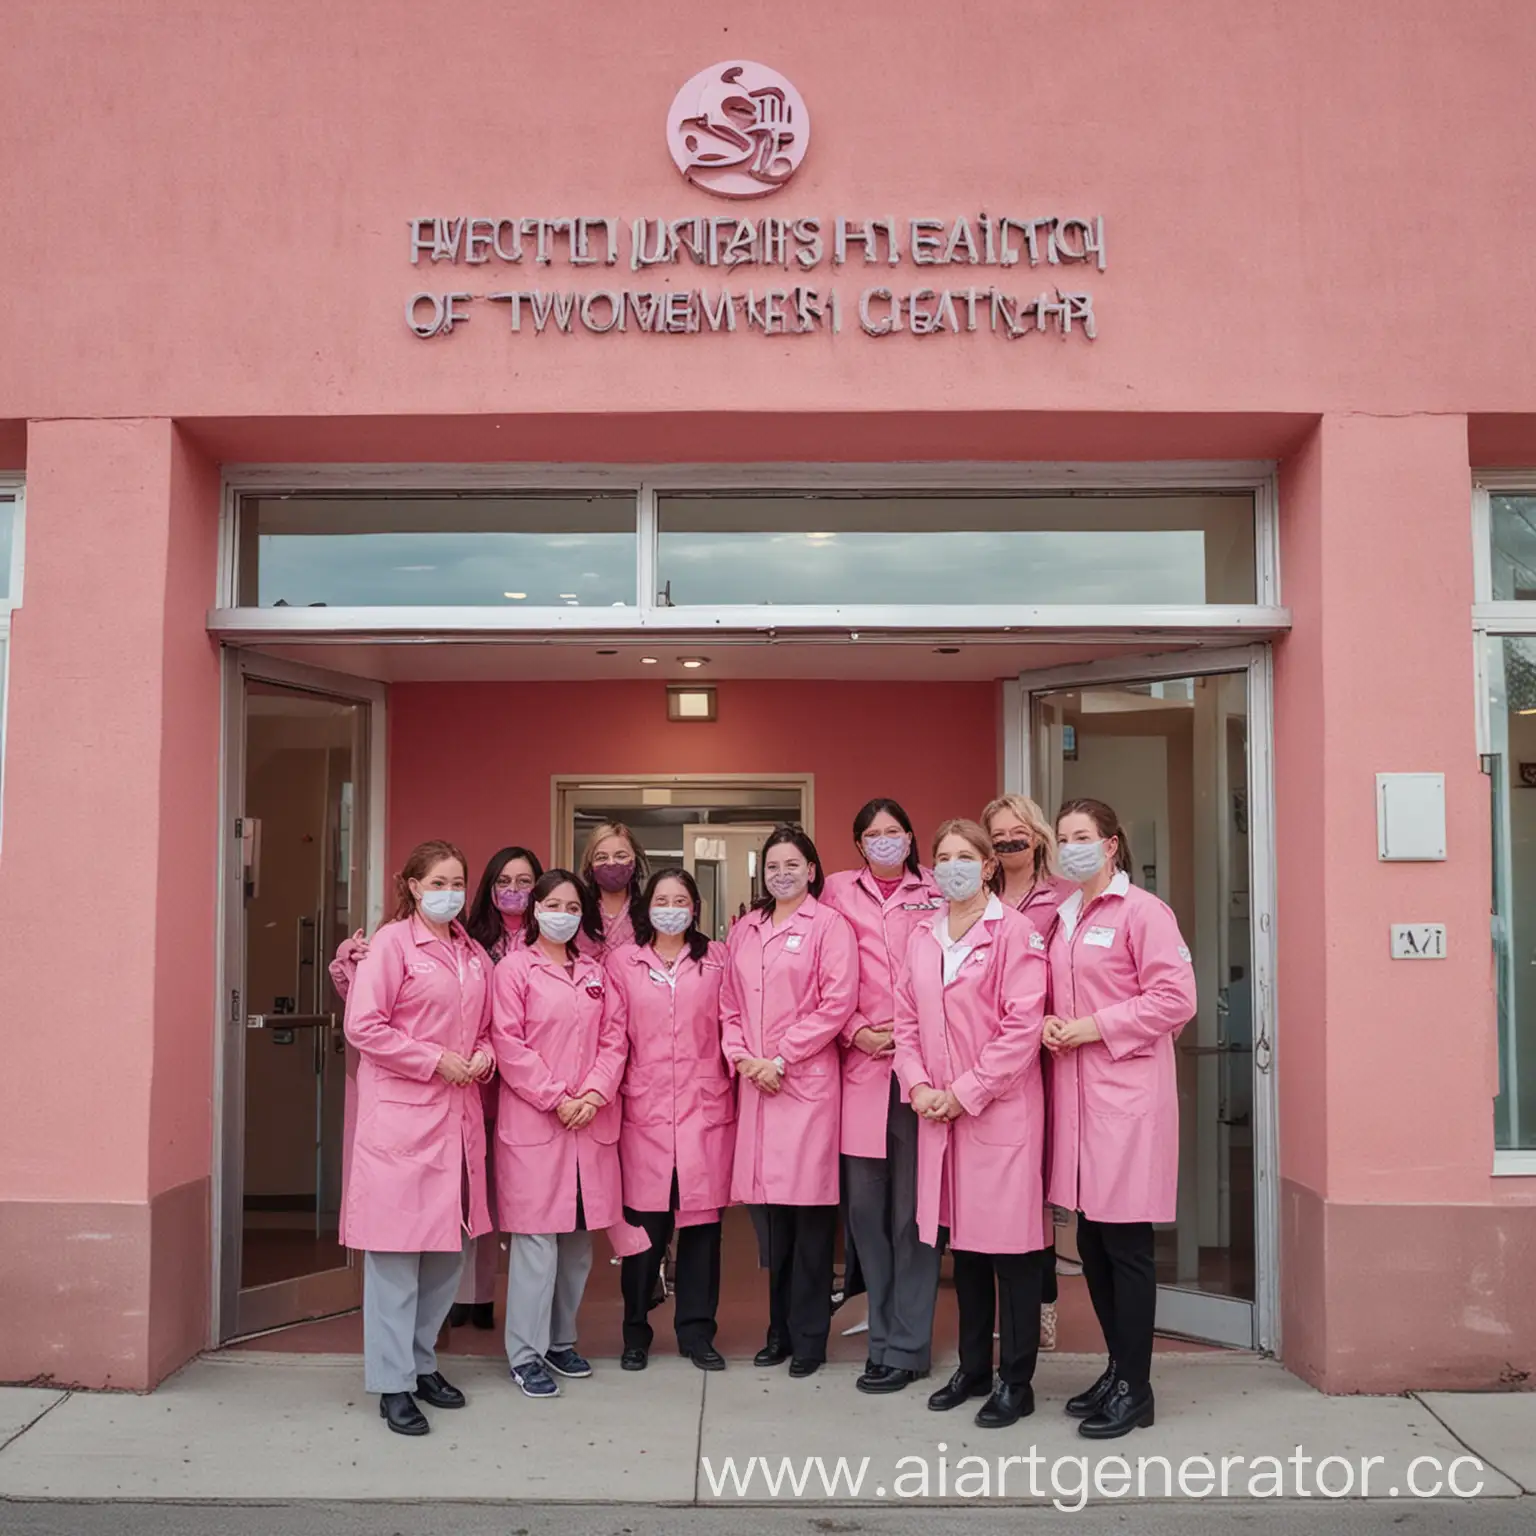 здание женского центра здоровья с его персоналом у входа, радостно улыбающимся. само здание, форма персонала и все вокруг розовое.